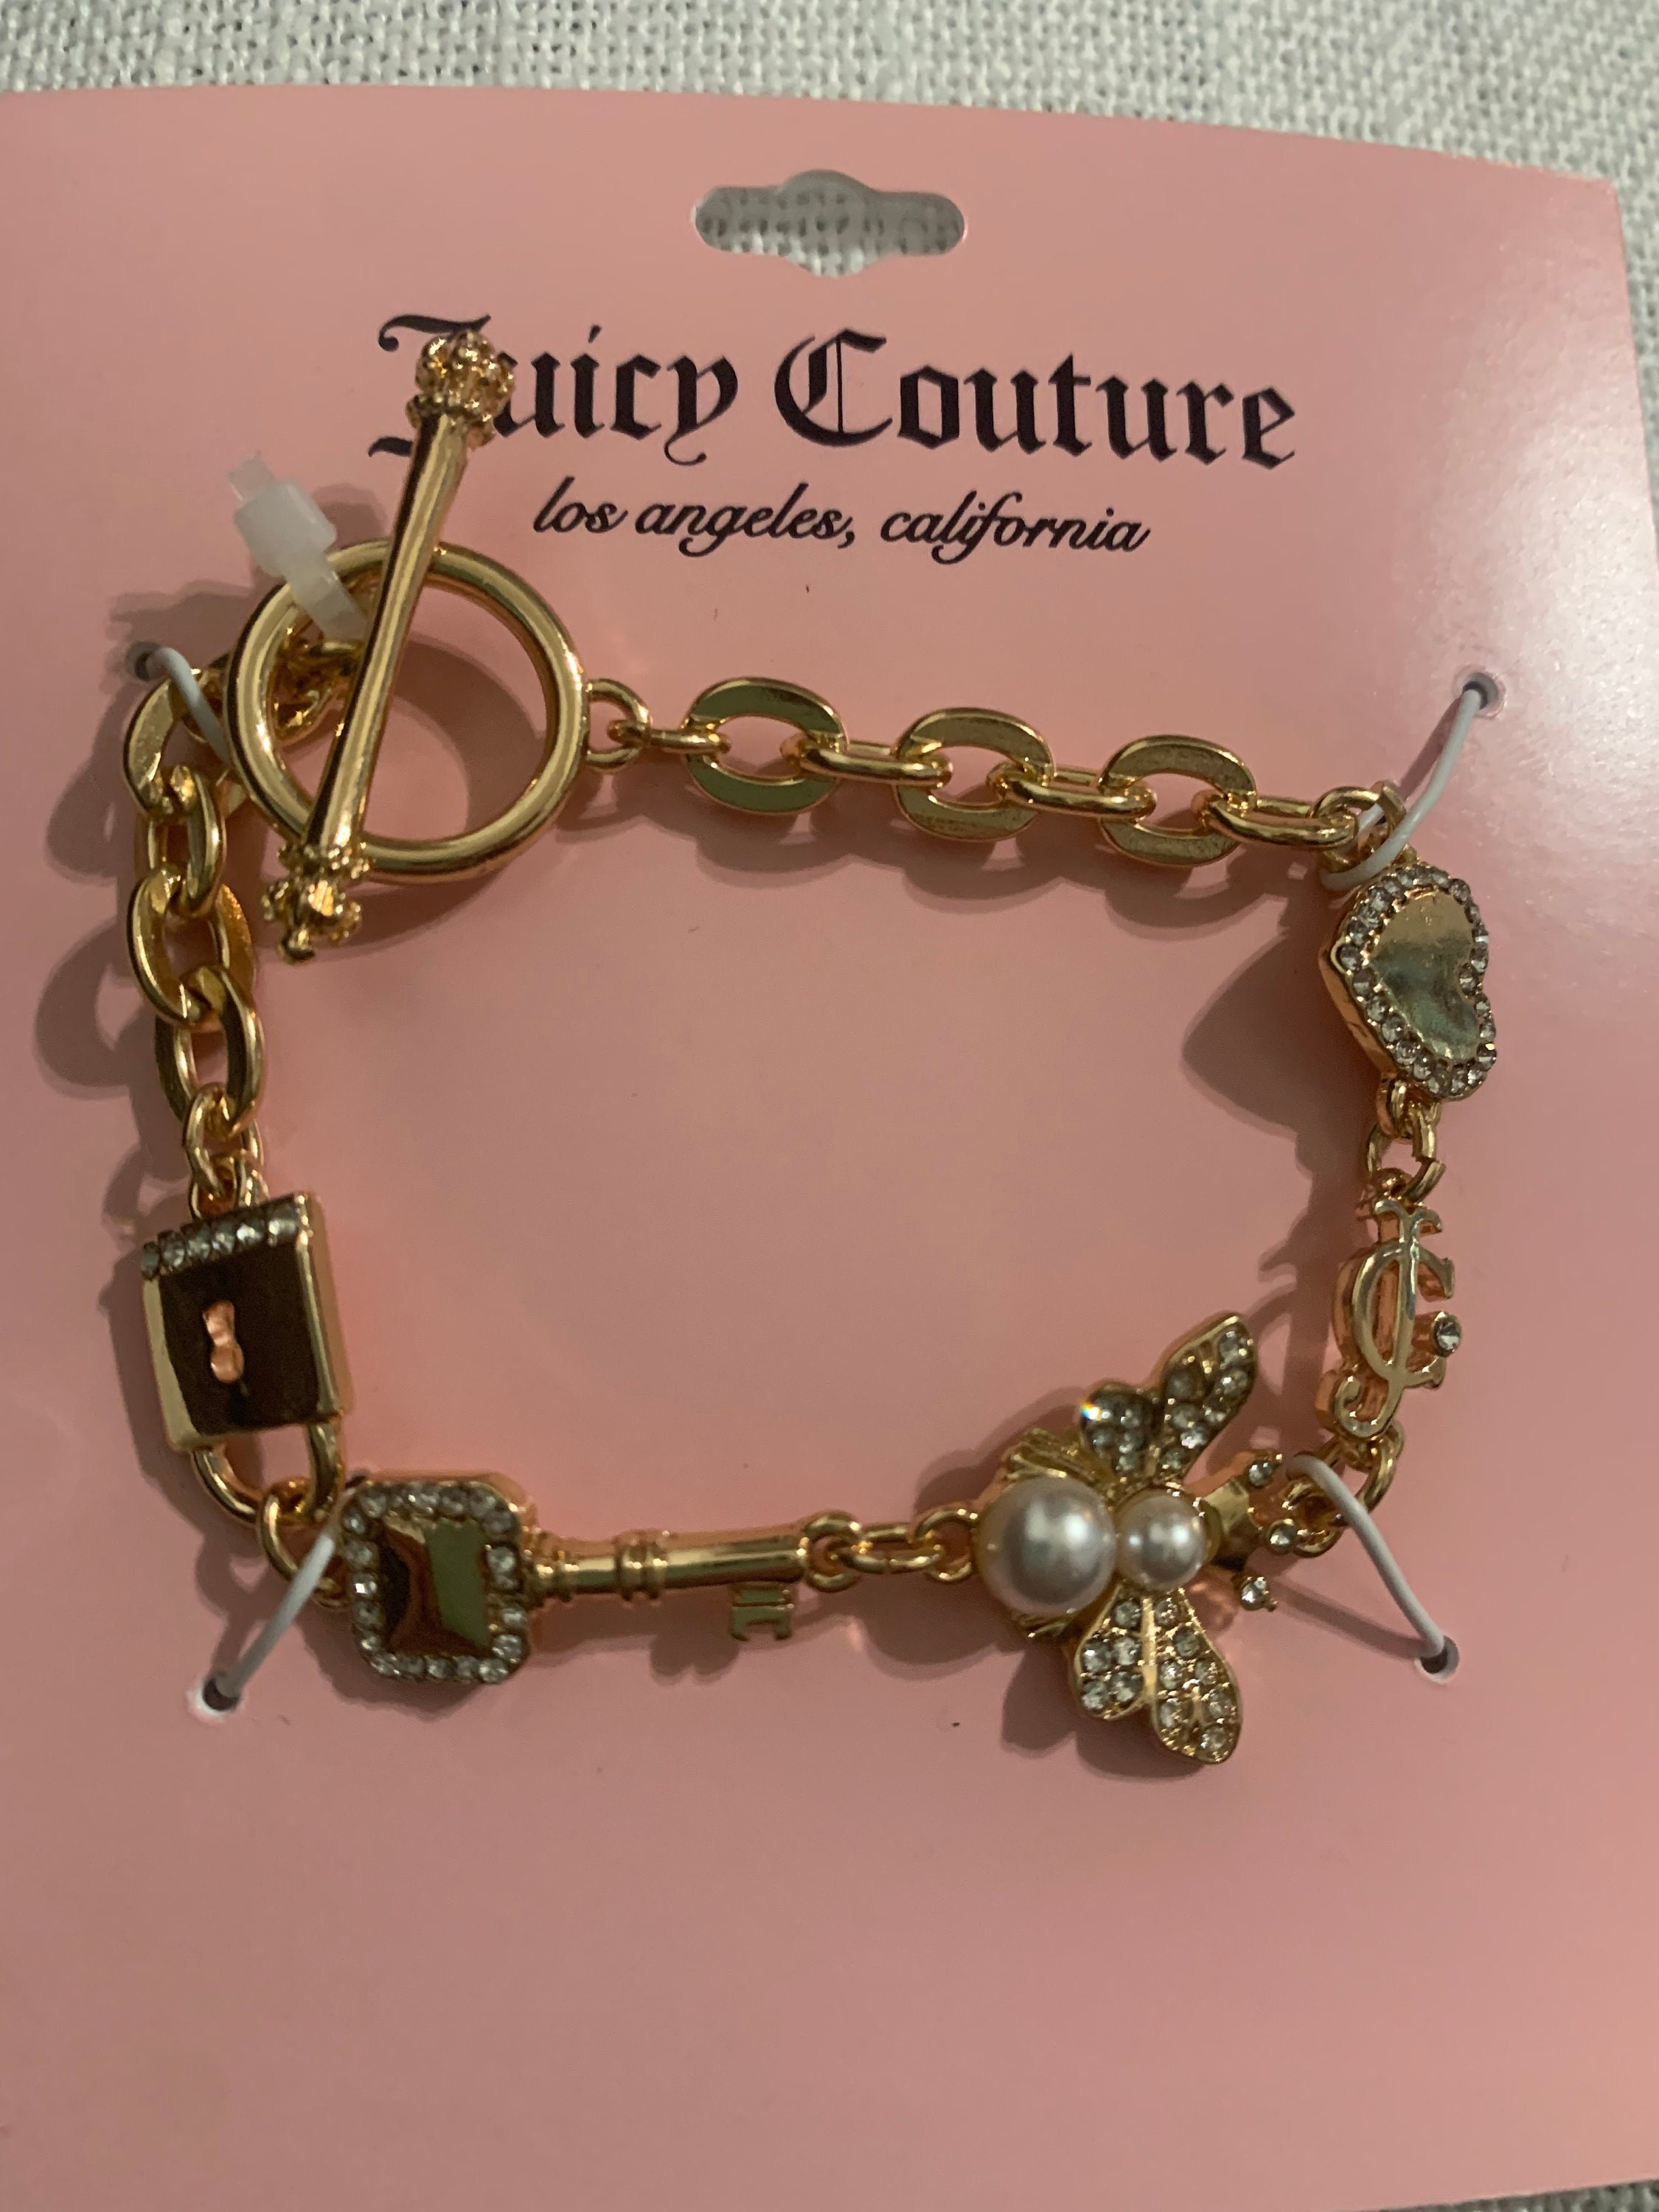 Juicy Couture Bracelet – Authentik Attik